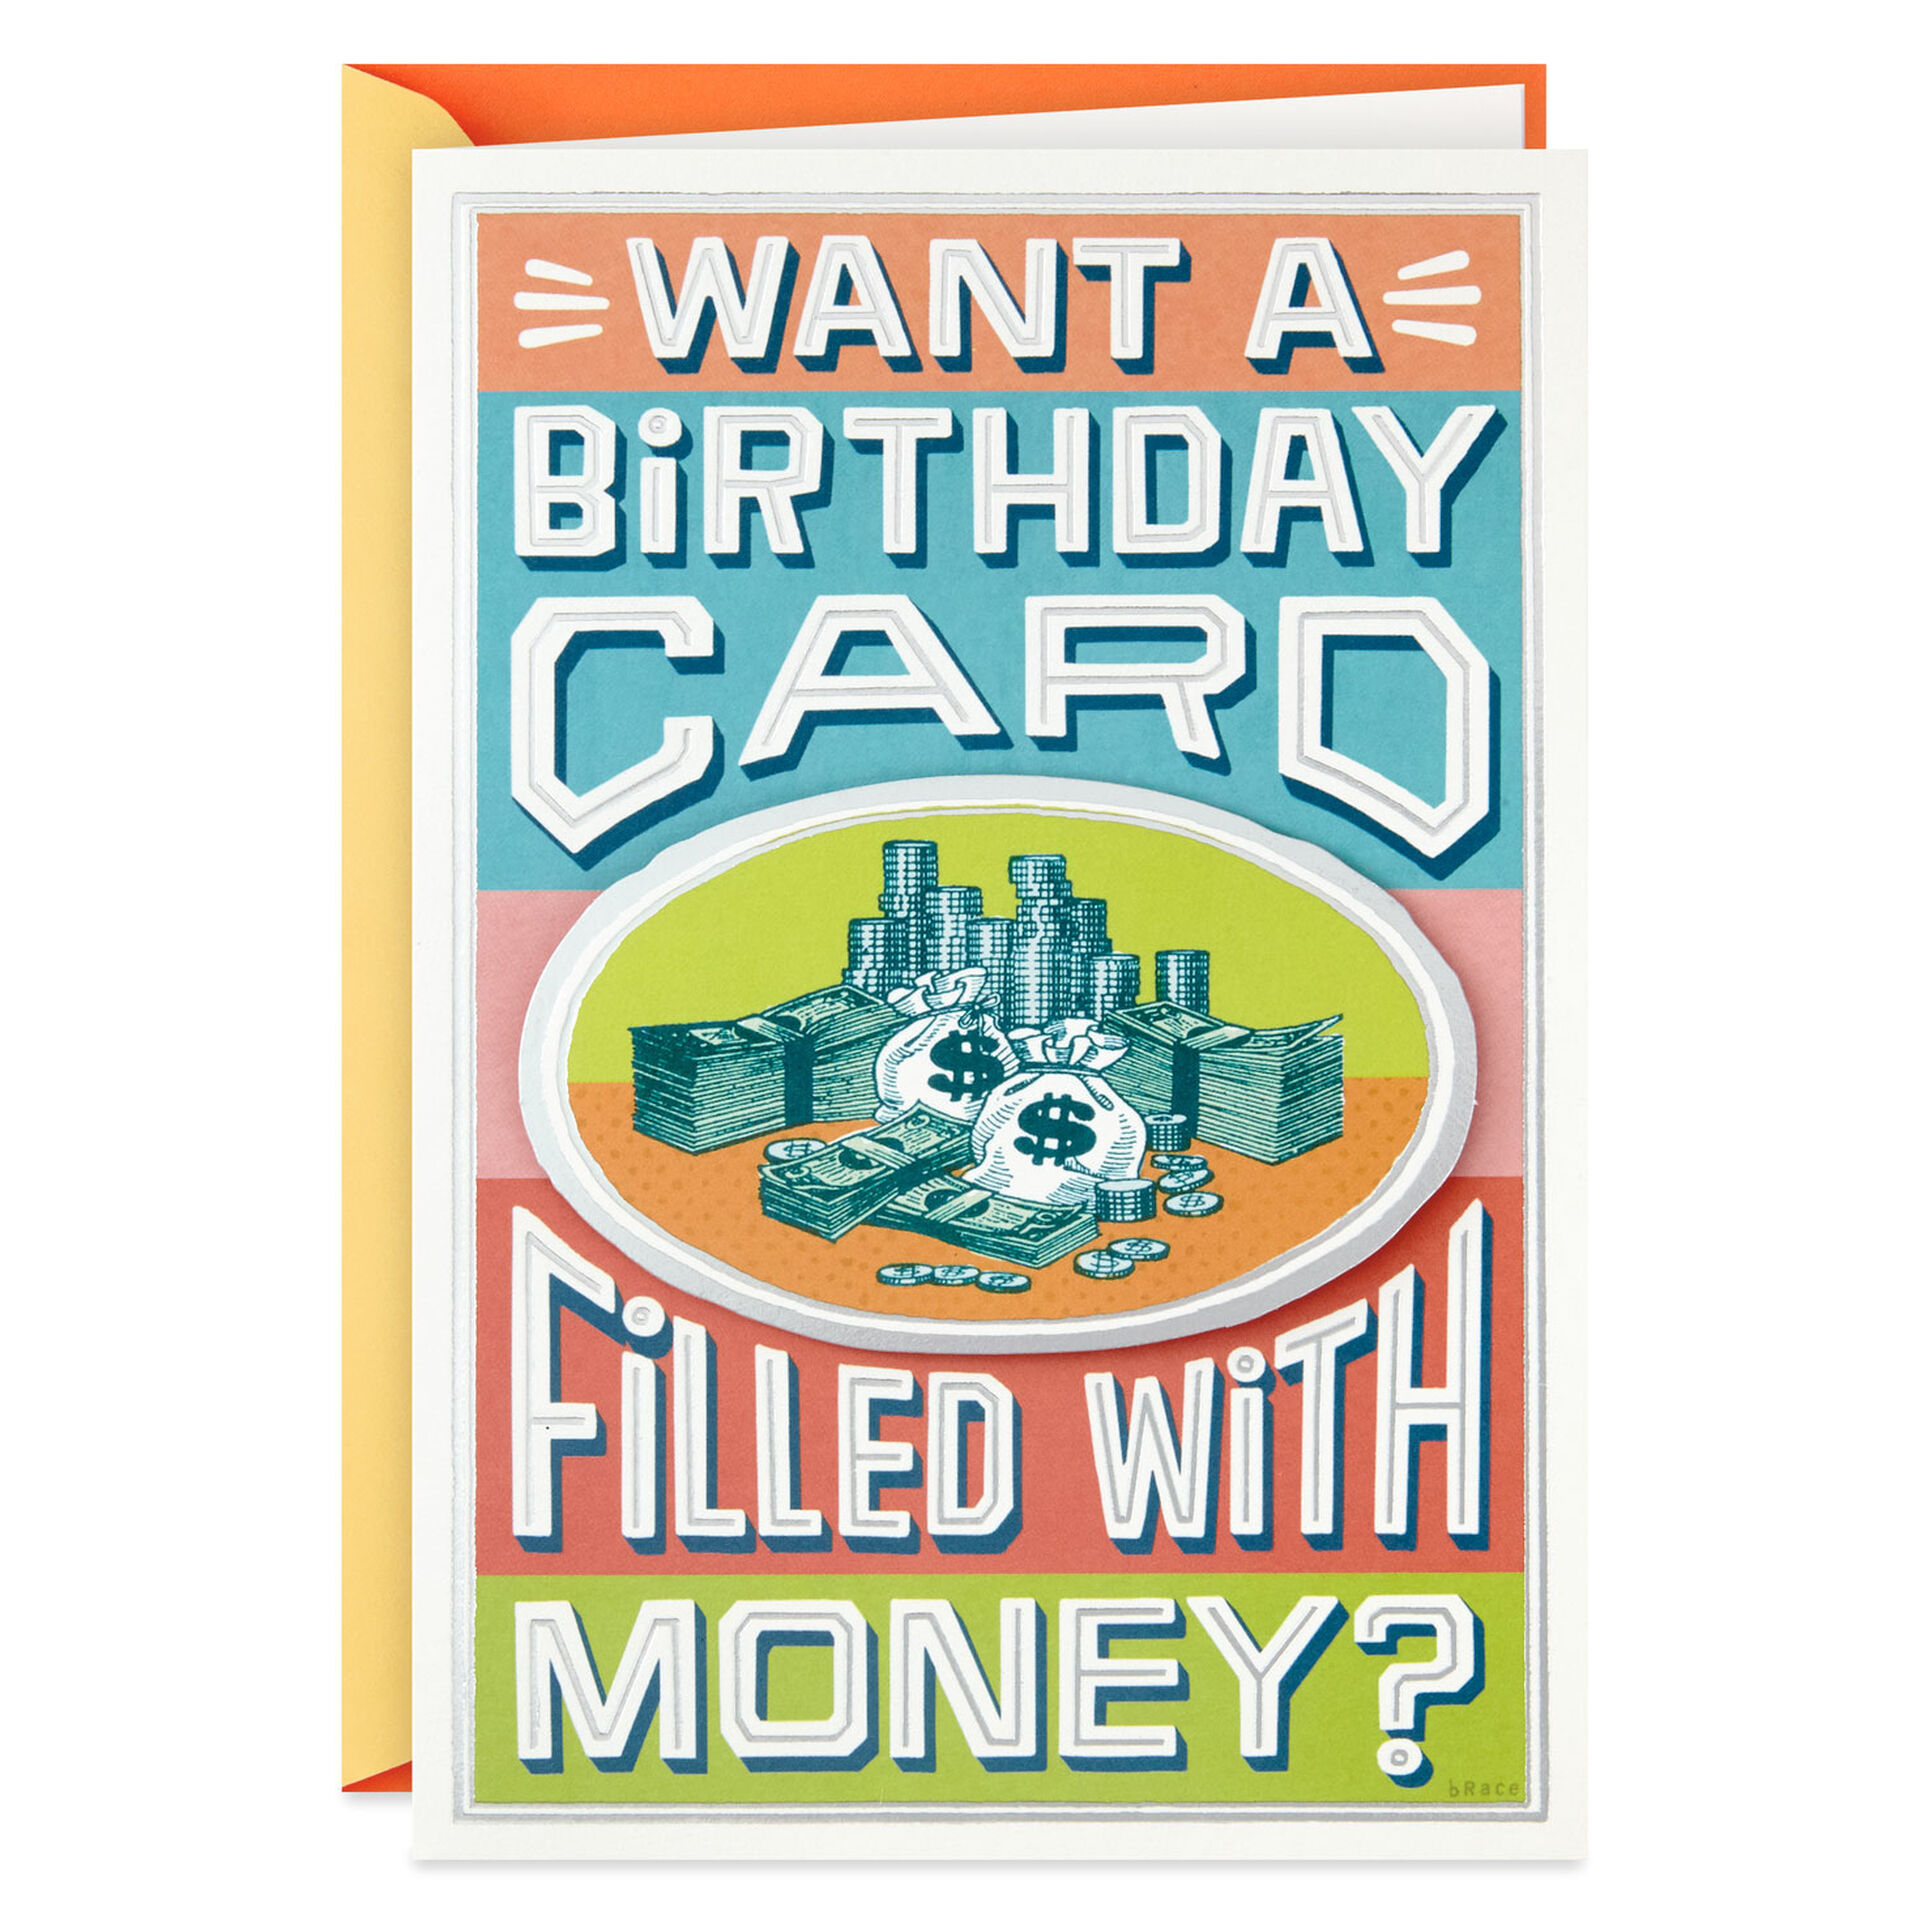 money-in-birthday-card-ubicaciondepersonas-cdmx-gob-mx